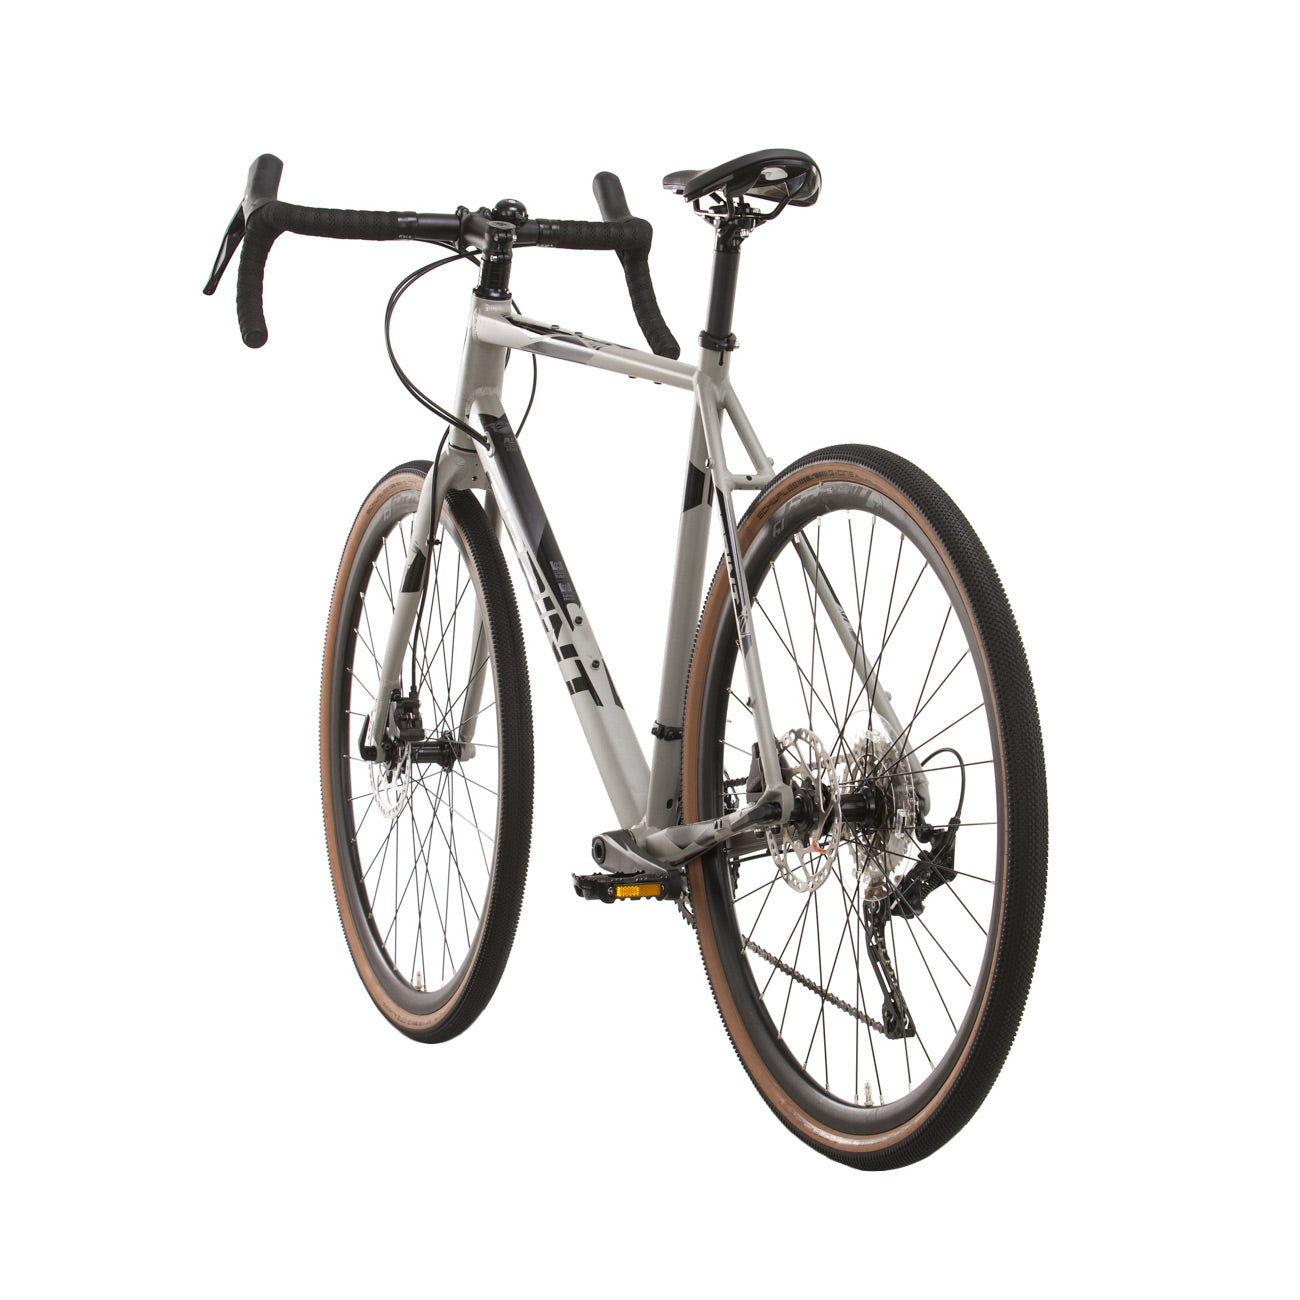 herren-gravel-bike-fahrrad-whister-shimano-grx-400-2-9-gang-52-56-cm-schwarz-grau-8